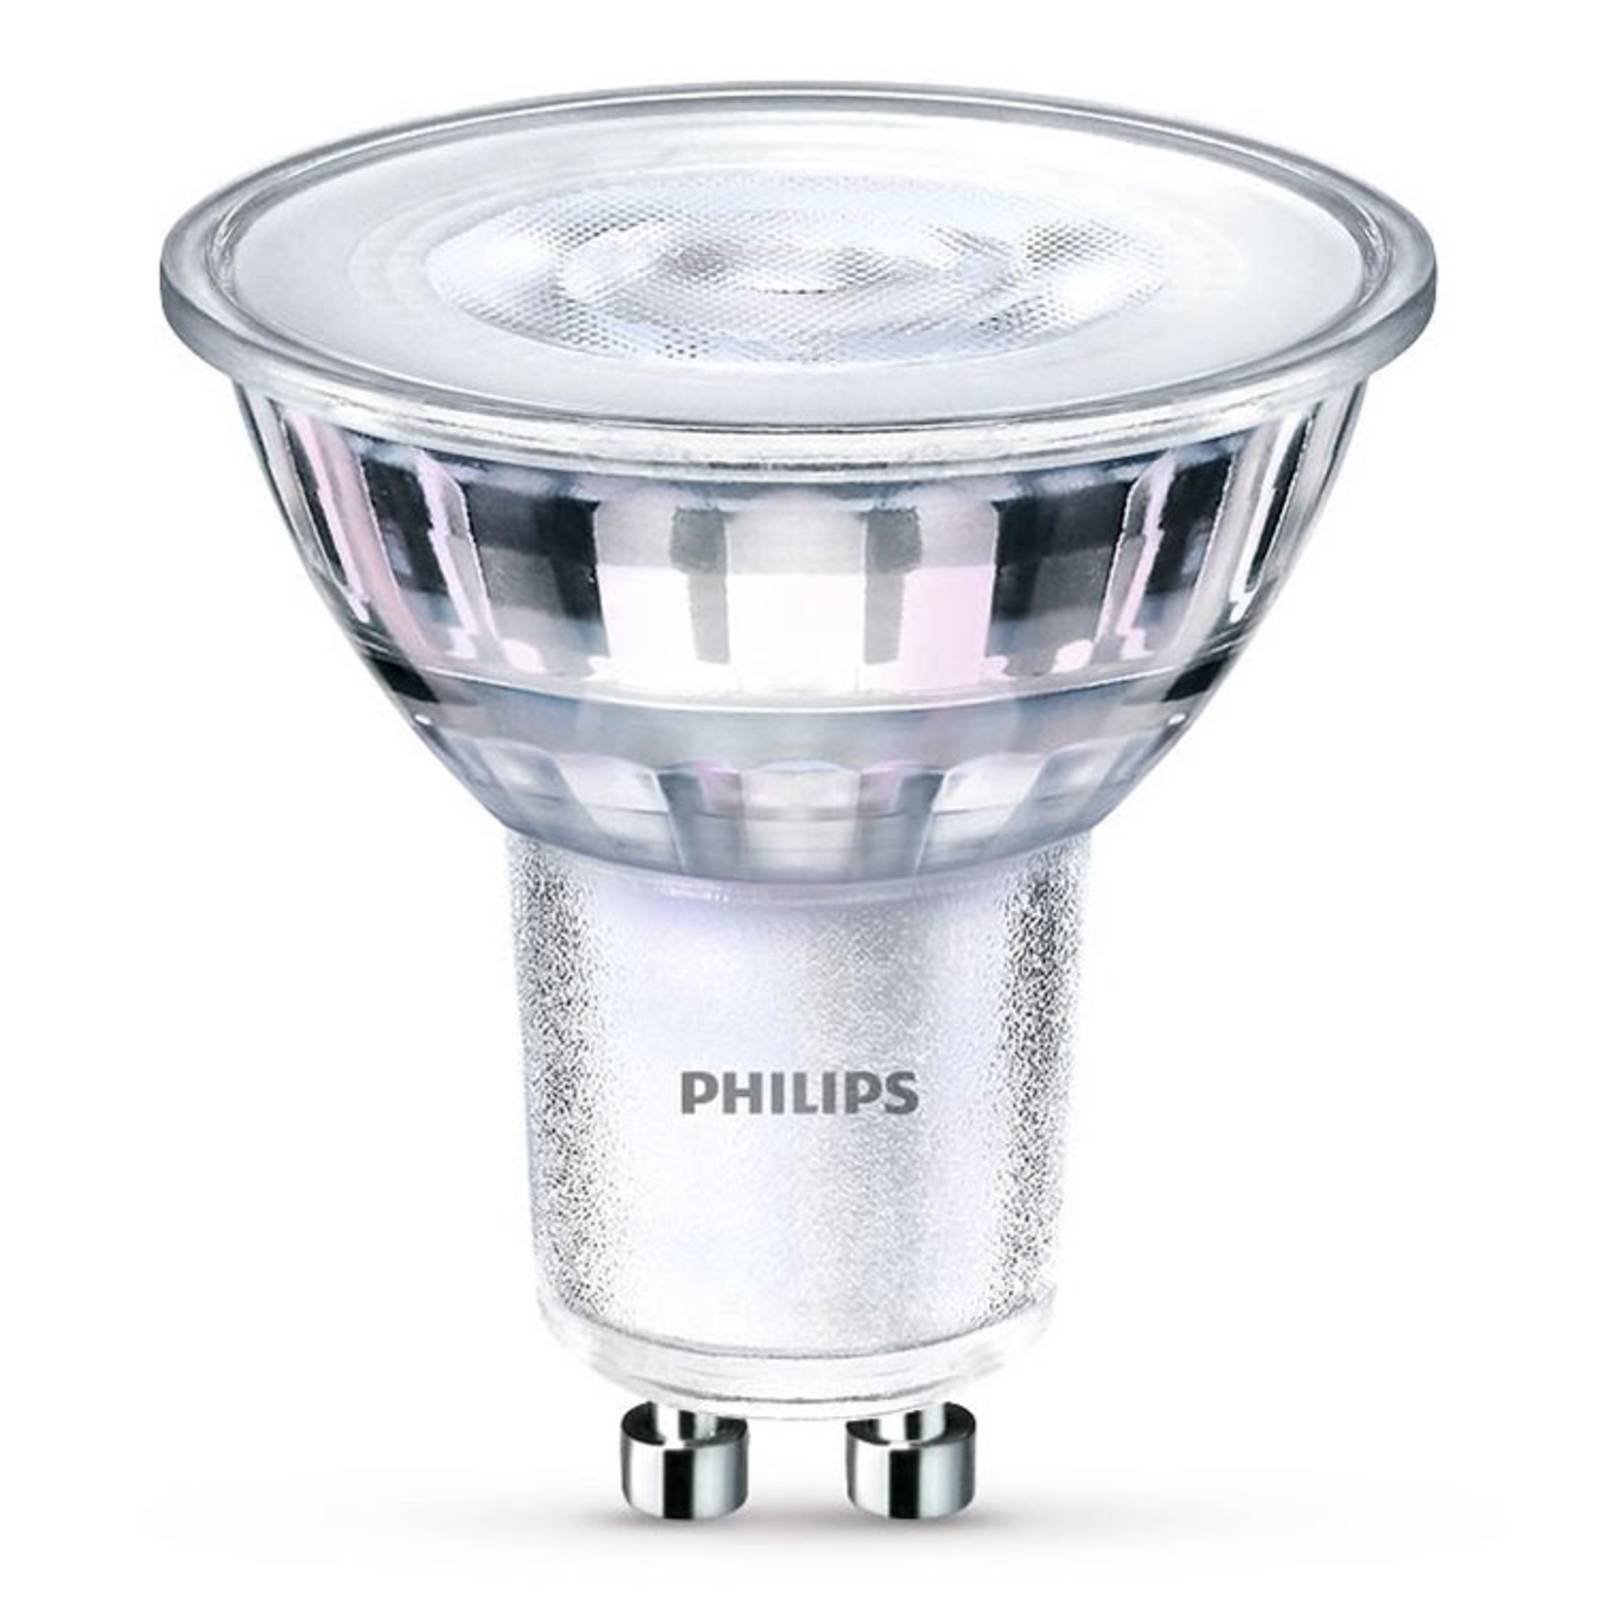 Philips GU10 4 W HV LED reflektor 36° melegfényű